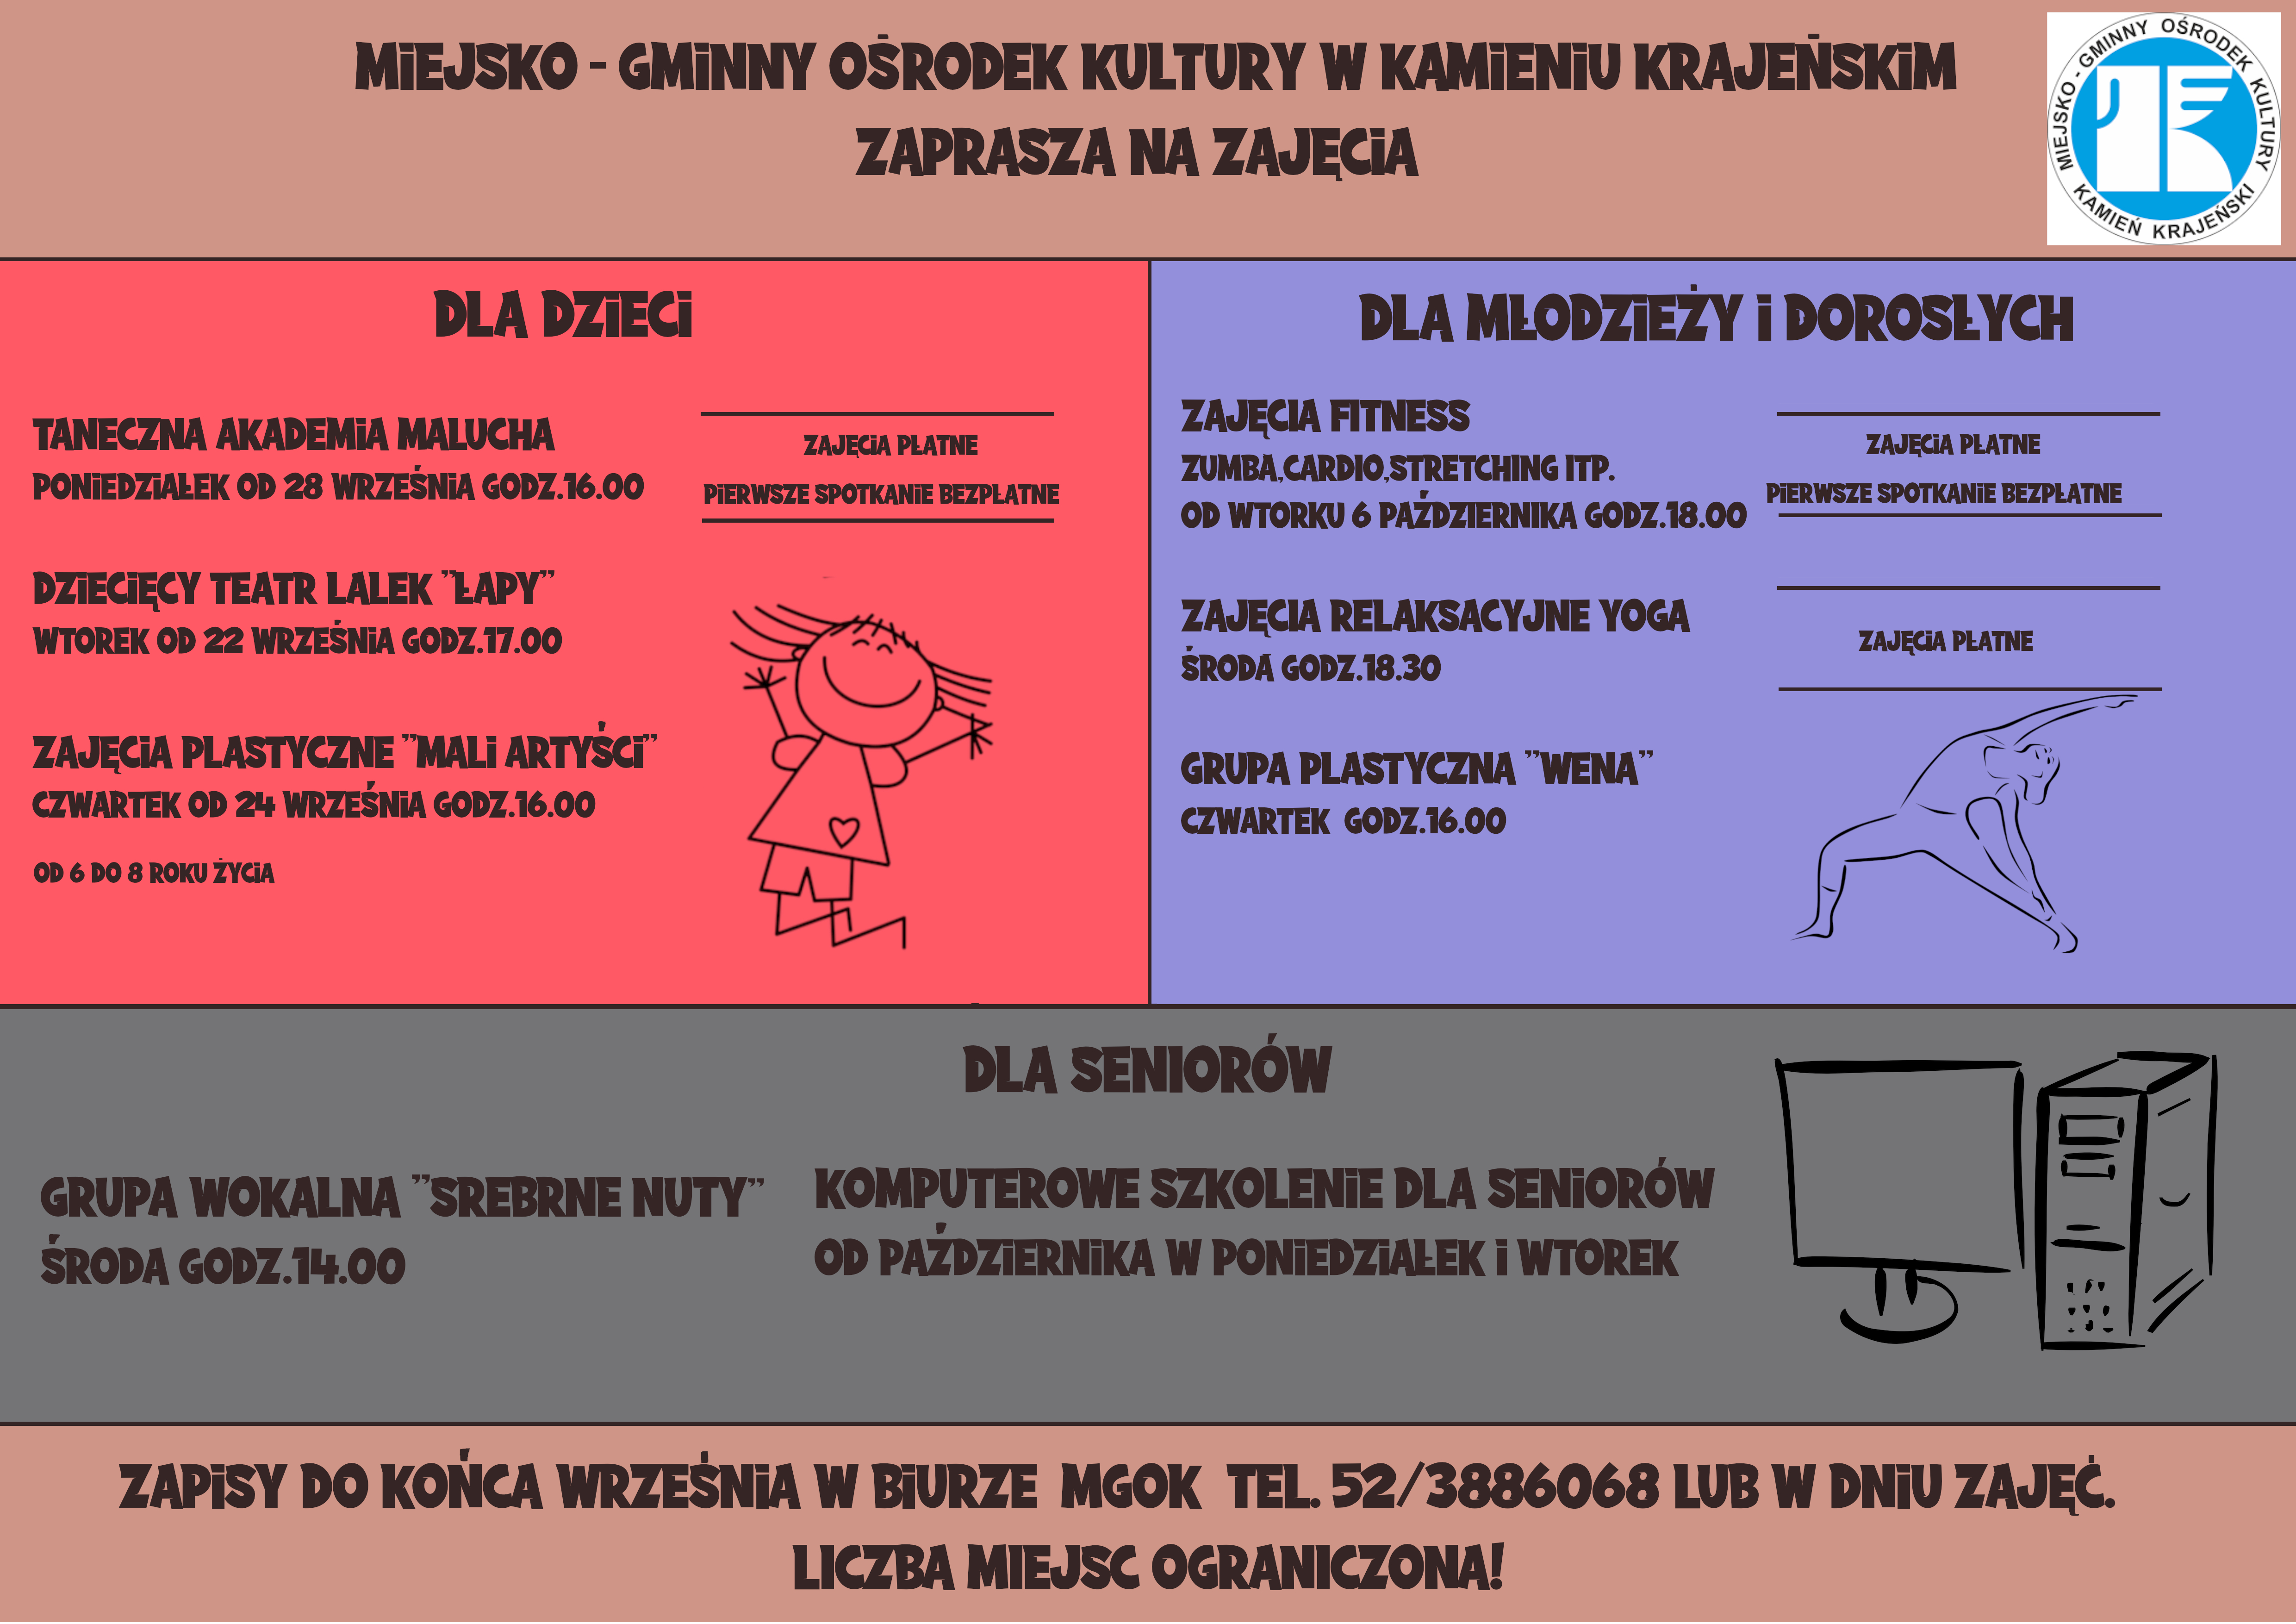 Plakat informacyjny o zajęciach dla dzieci, młodzieży i dorosłych w Miejsko-Gminnym Ośrodku Kultury w Kamieniu Krajeńskim